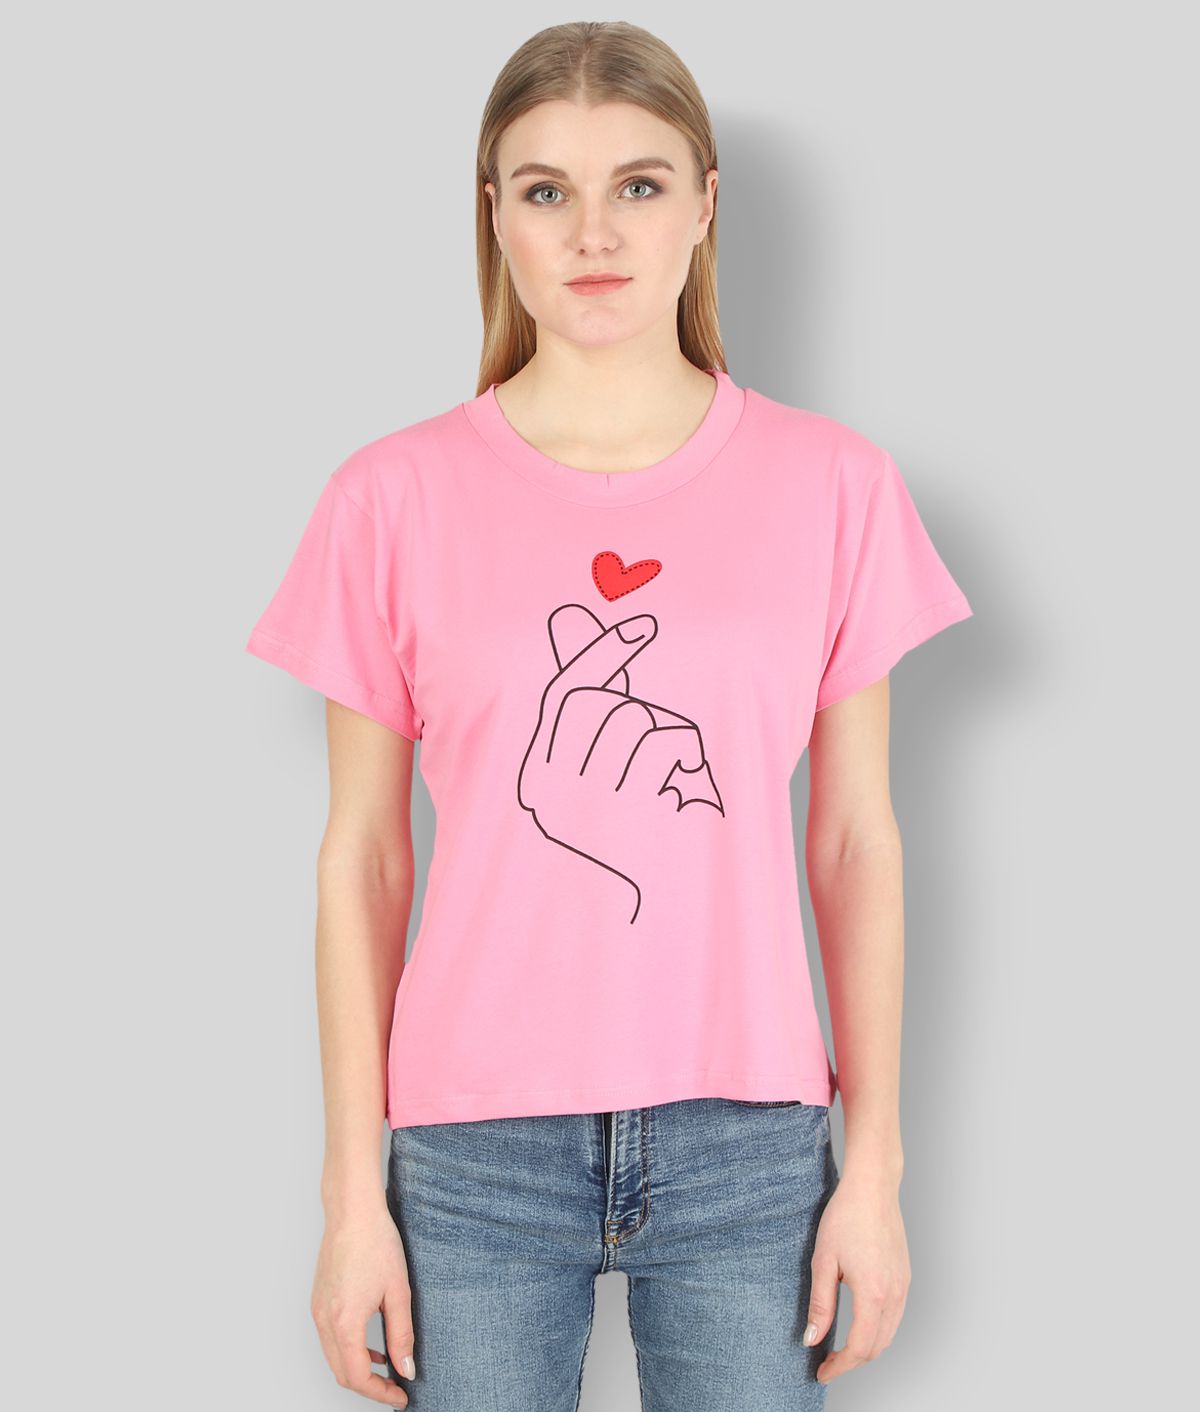 Affair - Pink Lycra Regular Fit Women's T-Shirt ( Pack of 1 )